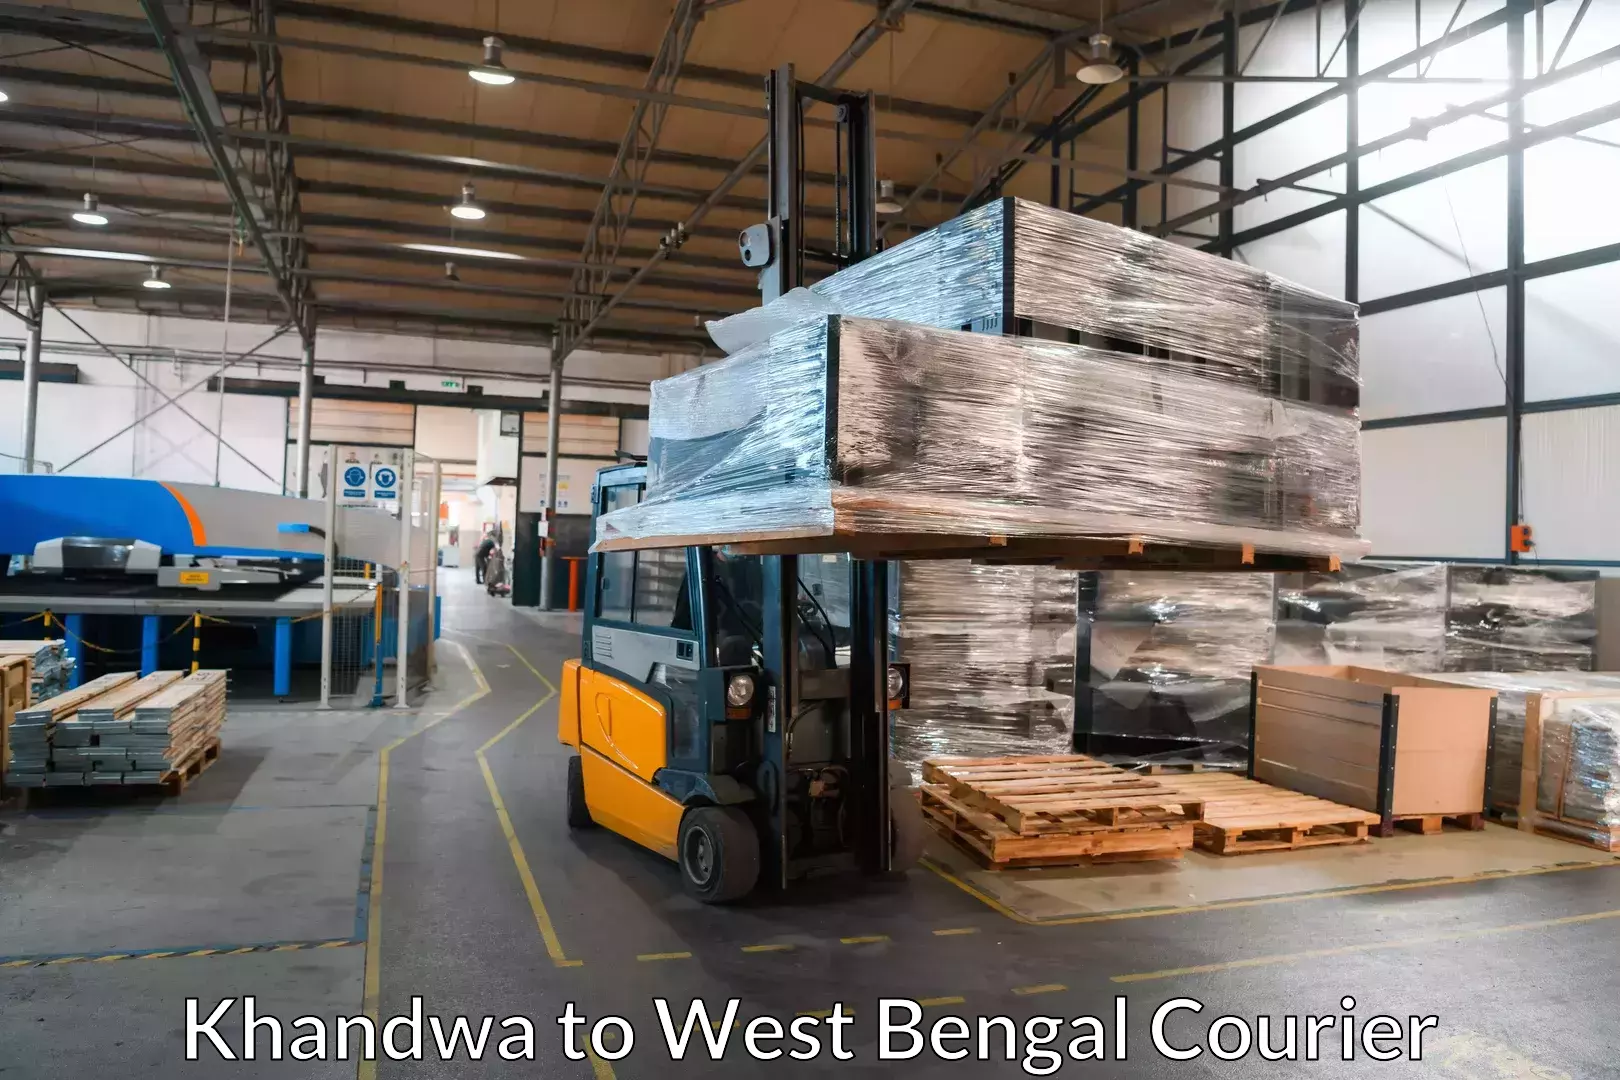 Professional moving company Khandwa to Panagarh